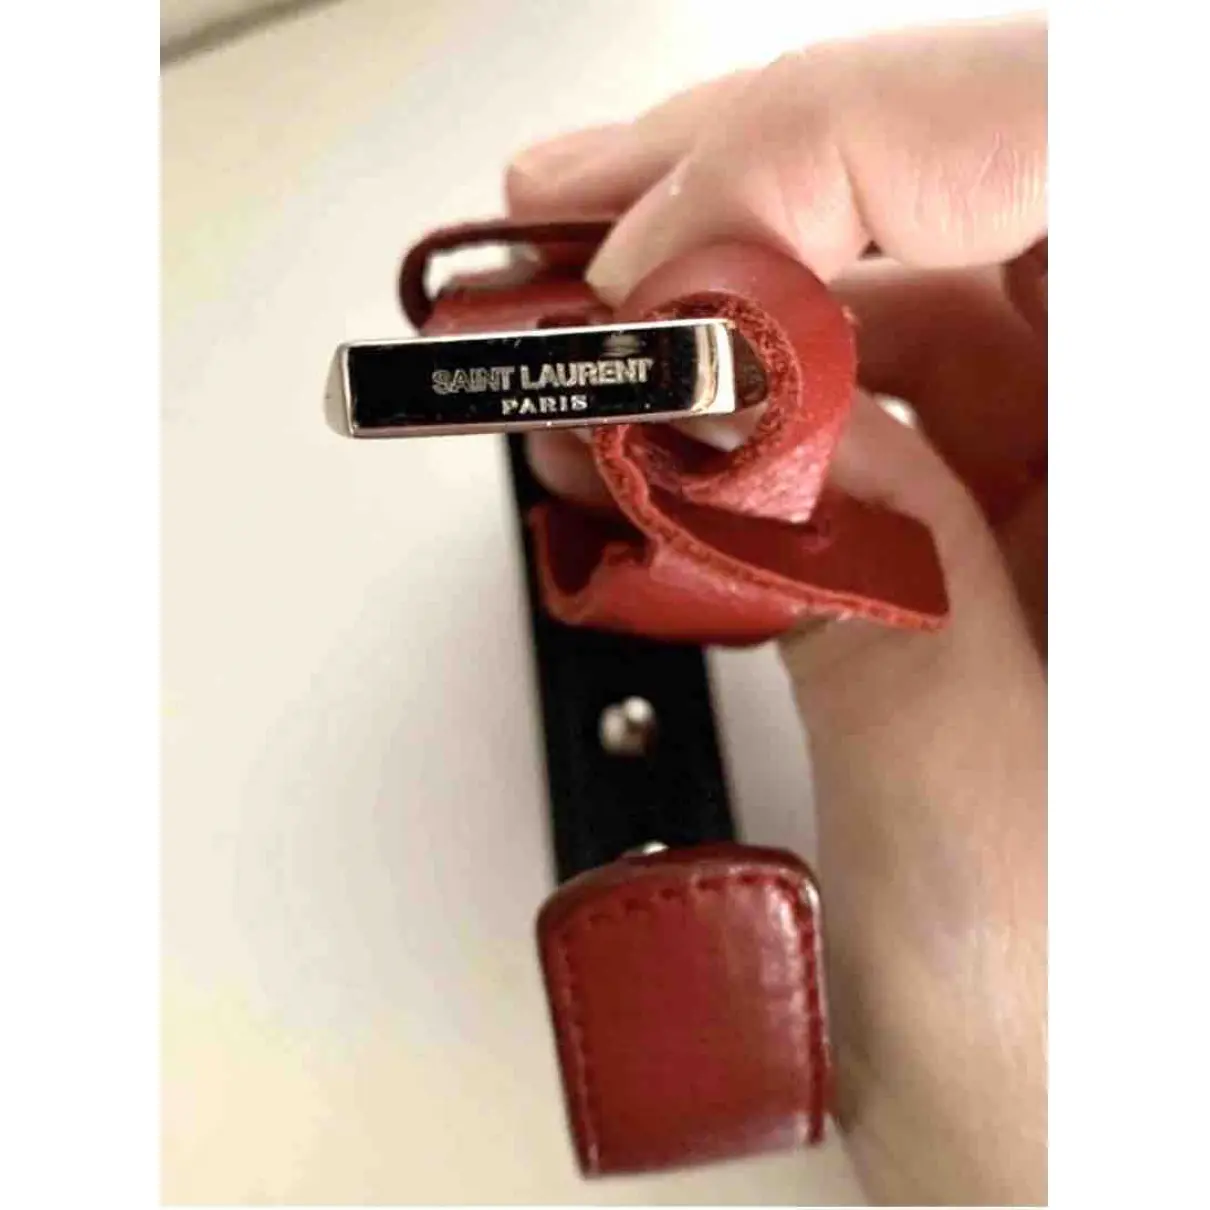 Buy Saint Laurent Leather bracelet online